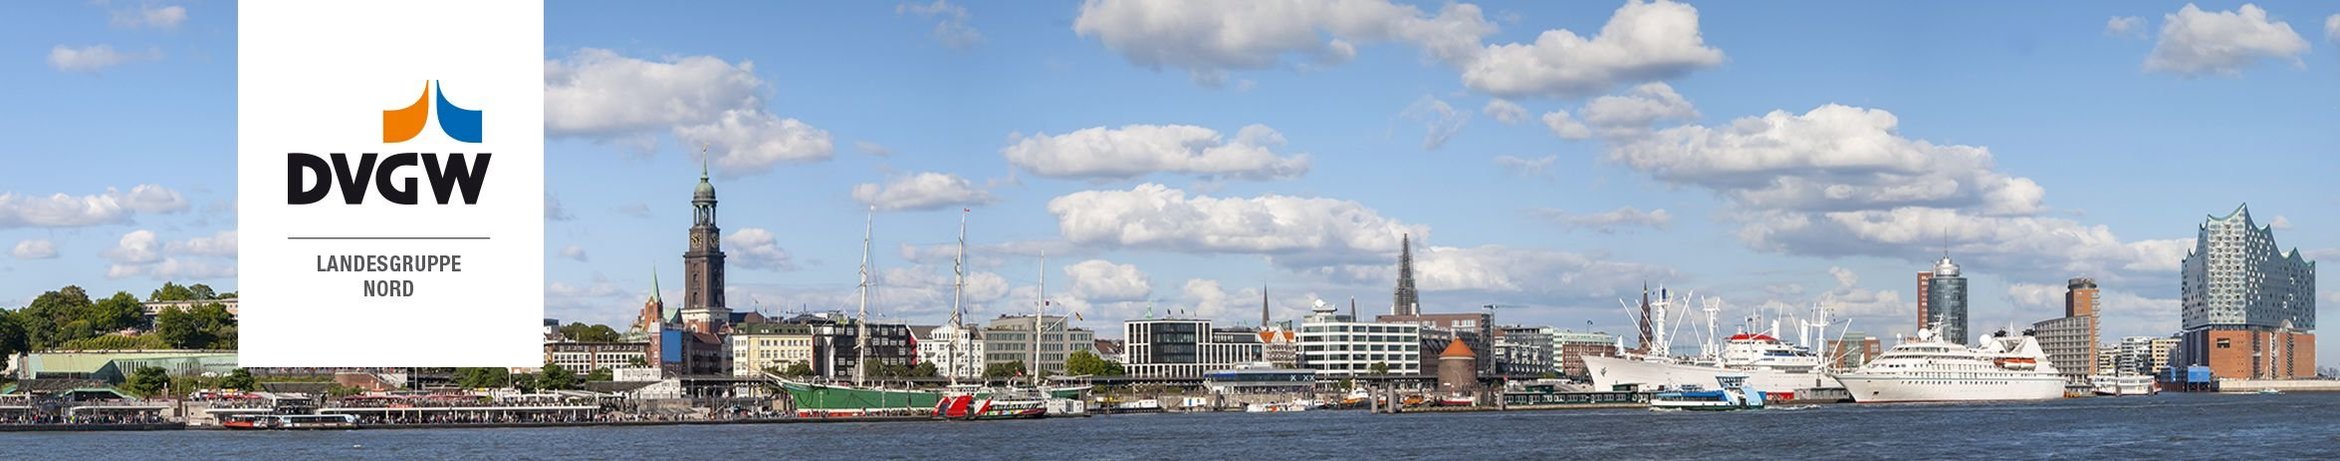 Ansicht von Hamburg vom Hafen aus gesehen